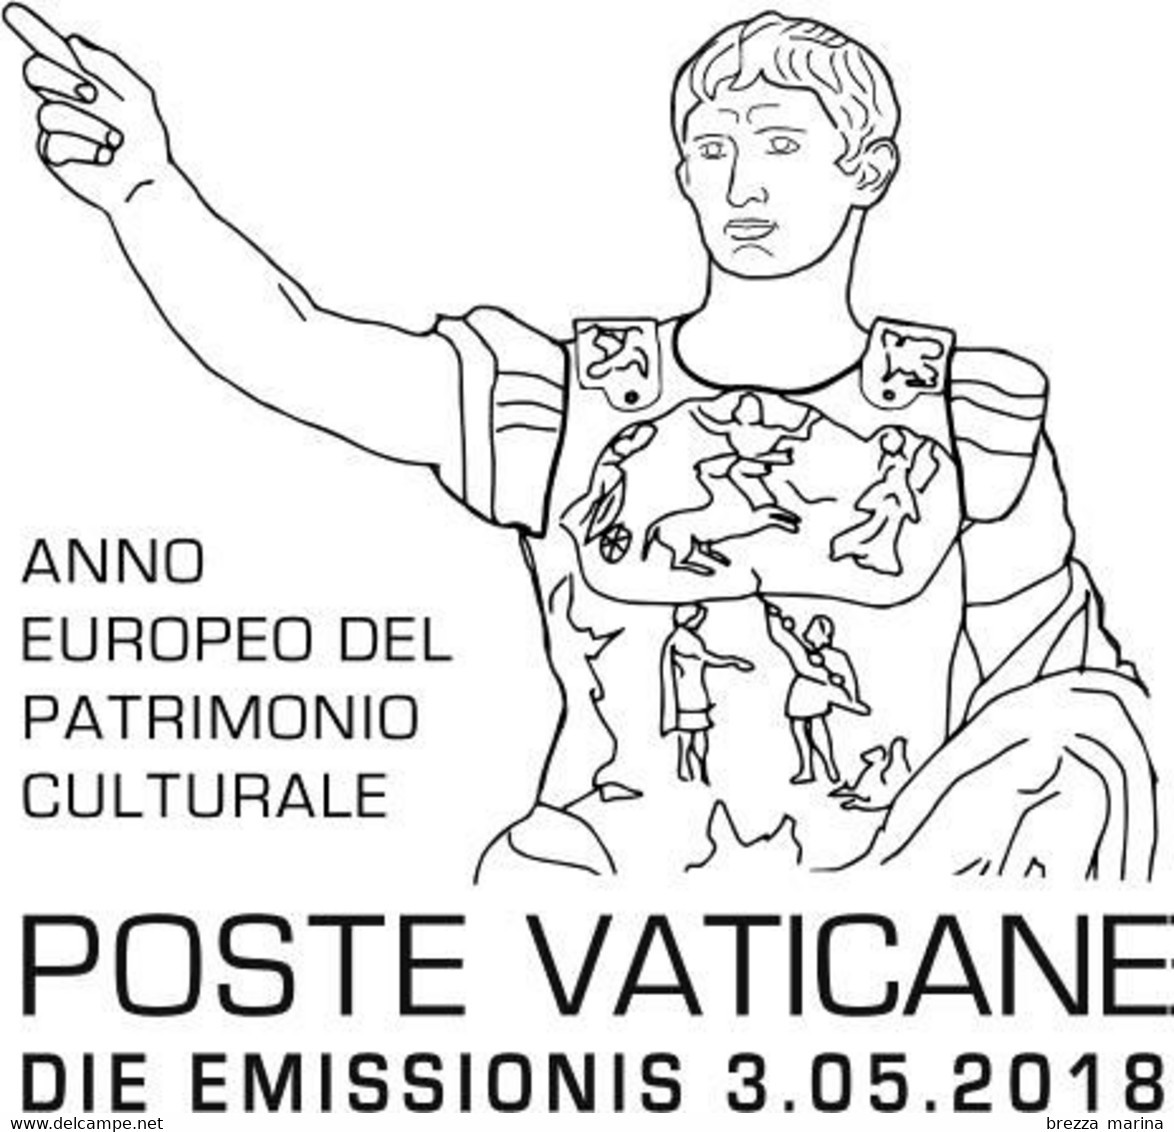 Nuovo - MNH - VATICANO - 2018 - Anno Europeo Del Patrimonio Culturale - Apollo Del Belvedere - 0.10 - Unused Stamps